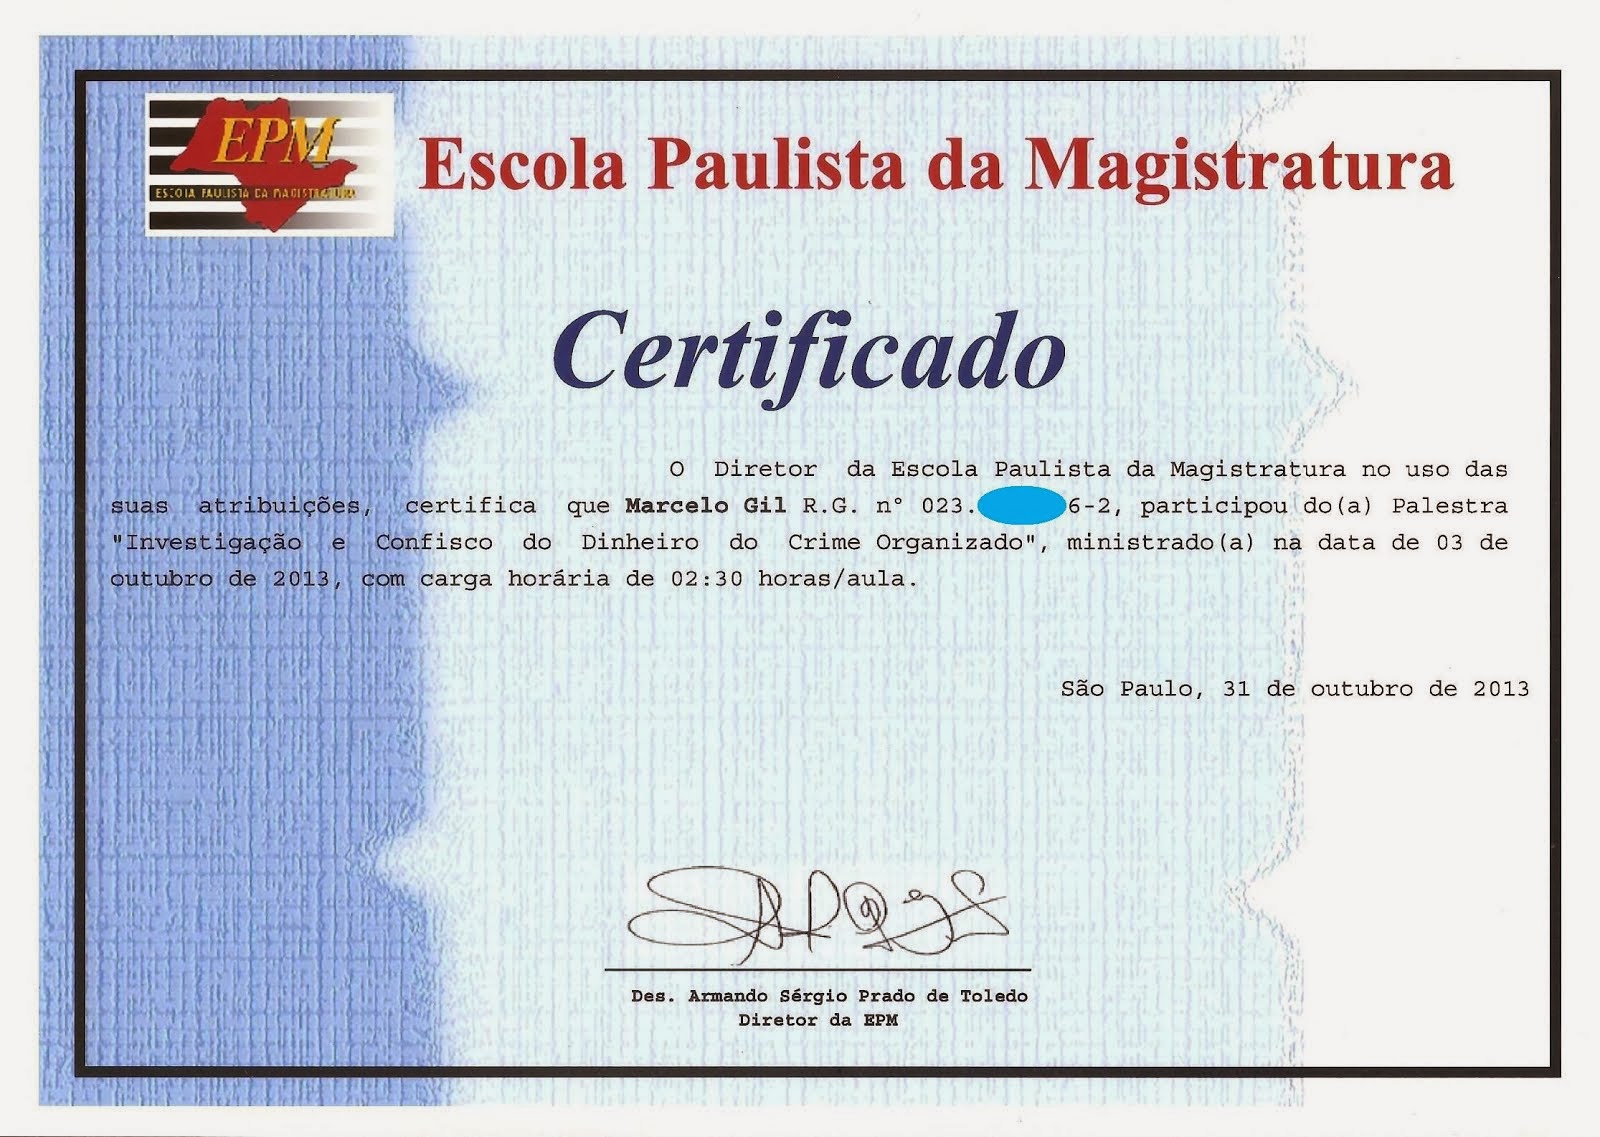 CERTIFICADO DE PARTICIPAÇÃO DE PALESTRA NA ESCOLA PAULISTA DE MAGISTRATURA / 2013